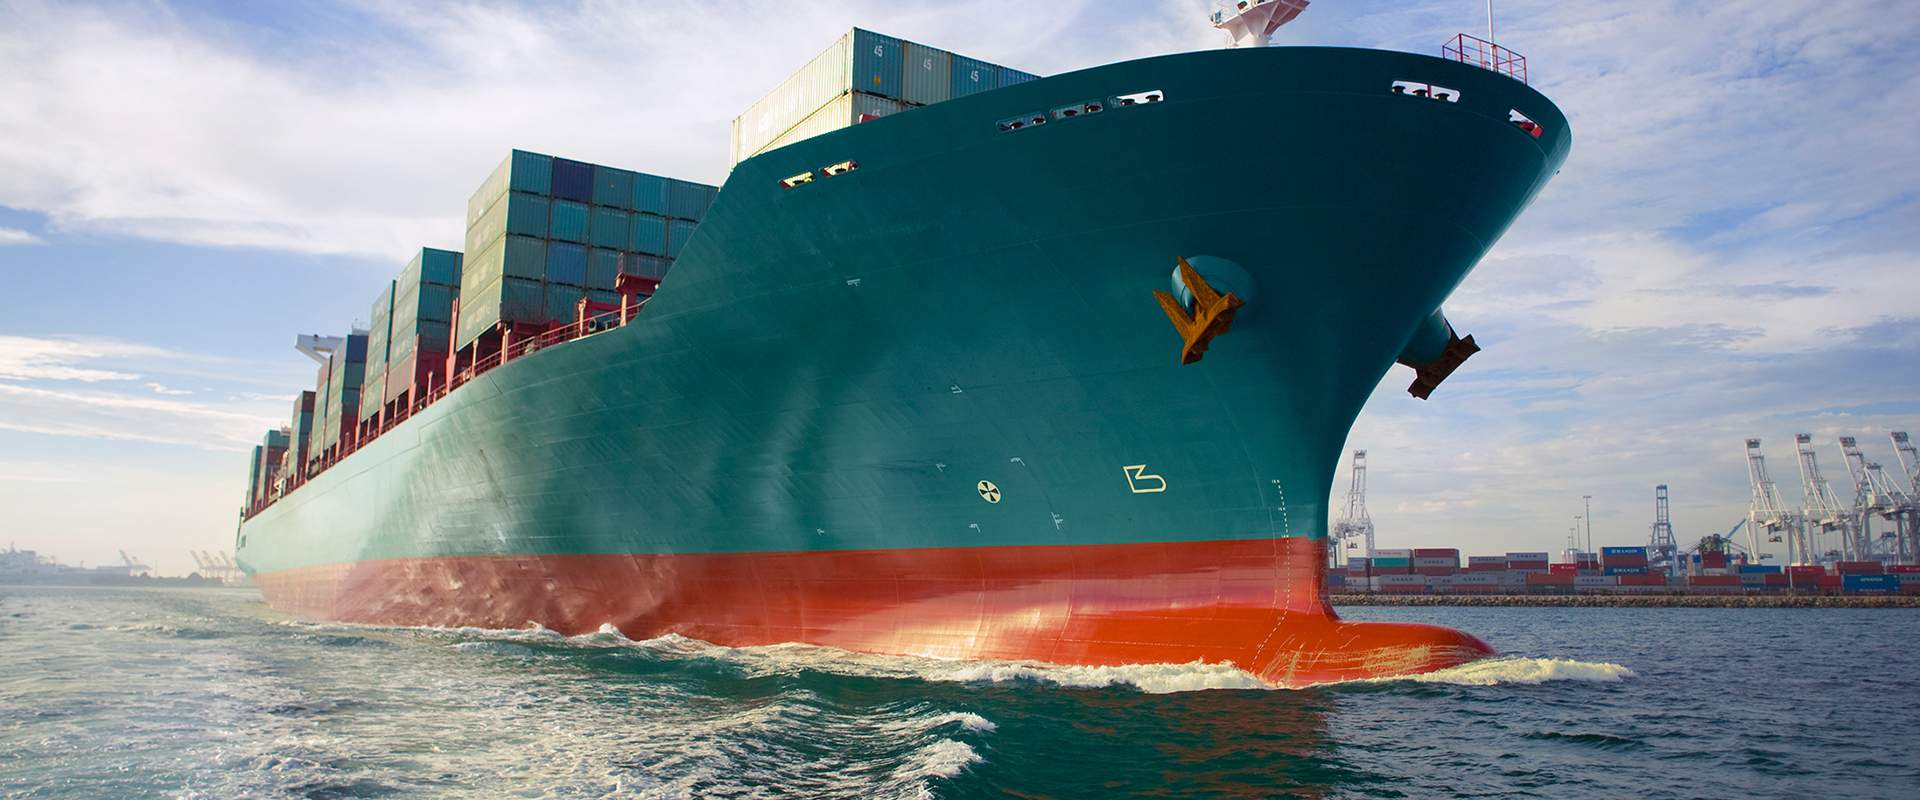 O&G tanker preparing for IMO 2020 regulations